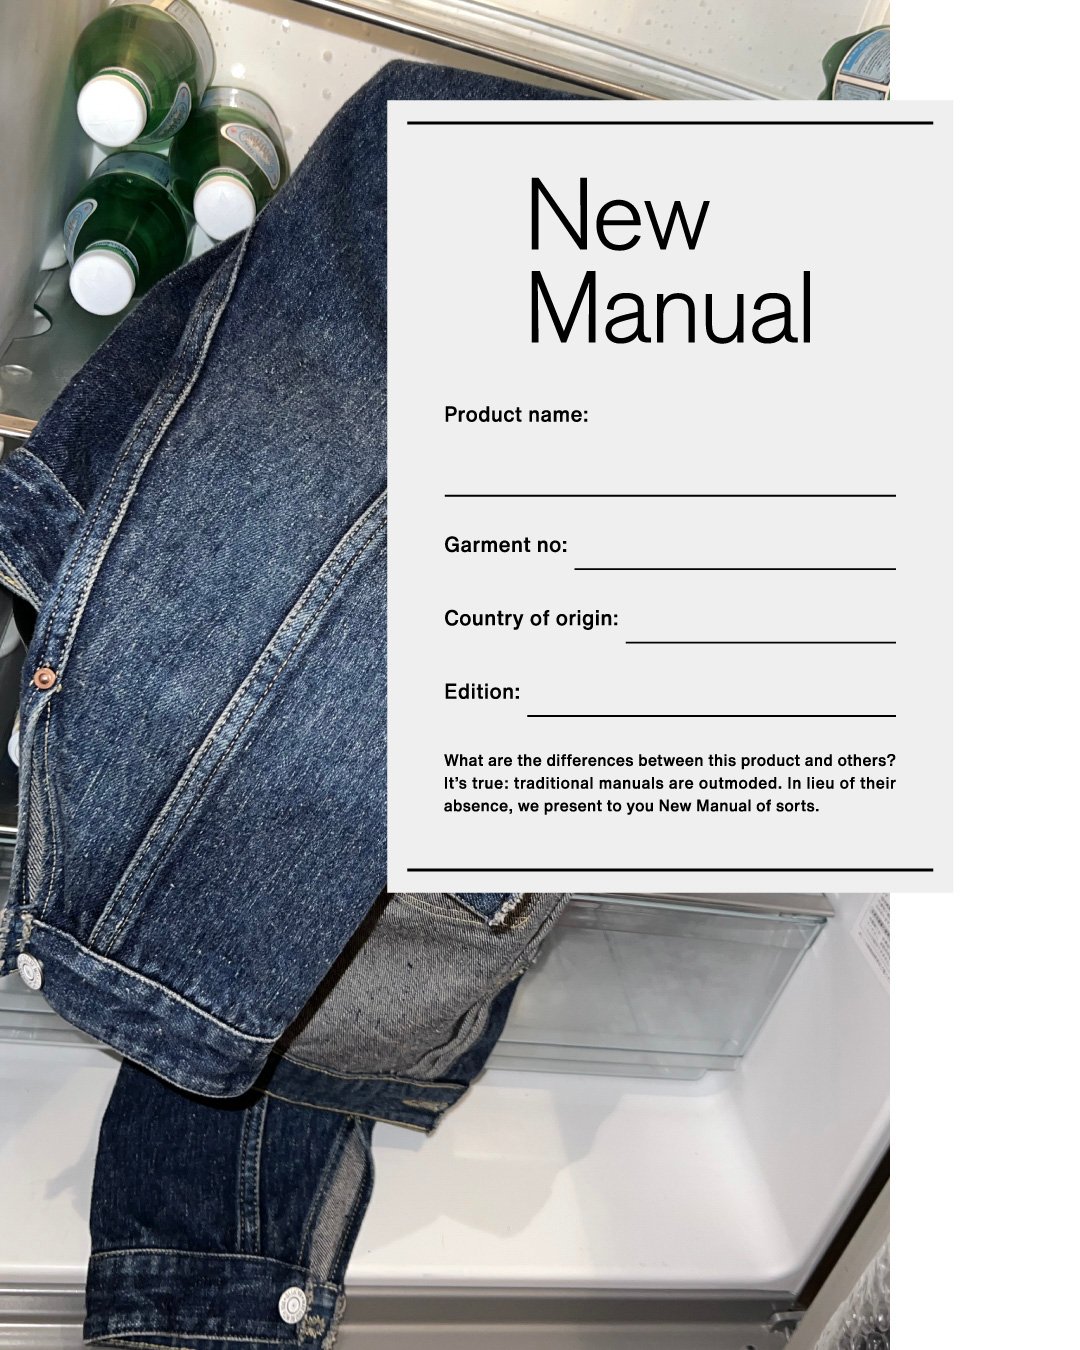 ヴィンテージアイテムを捉え直す新ブランド「New Manual」がデビュー ...